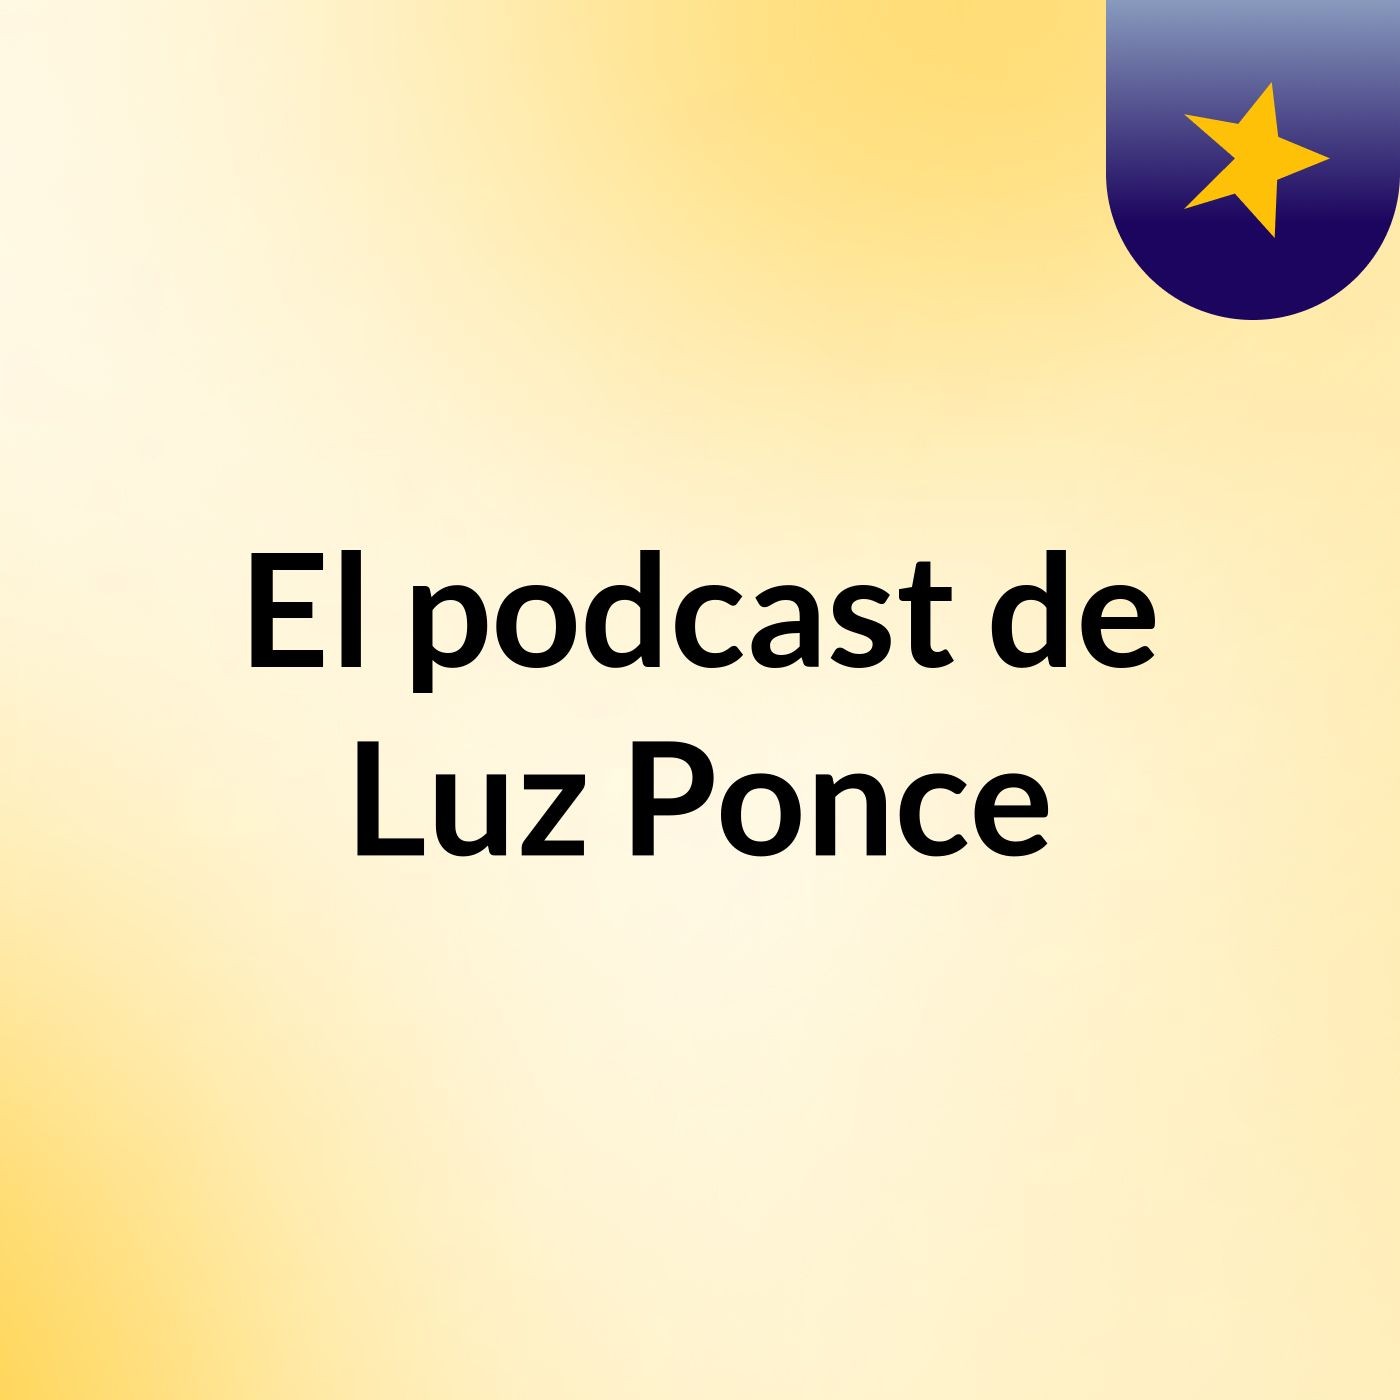 El podcast de Luz Ponce